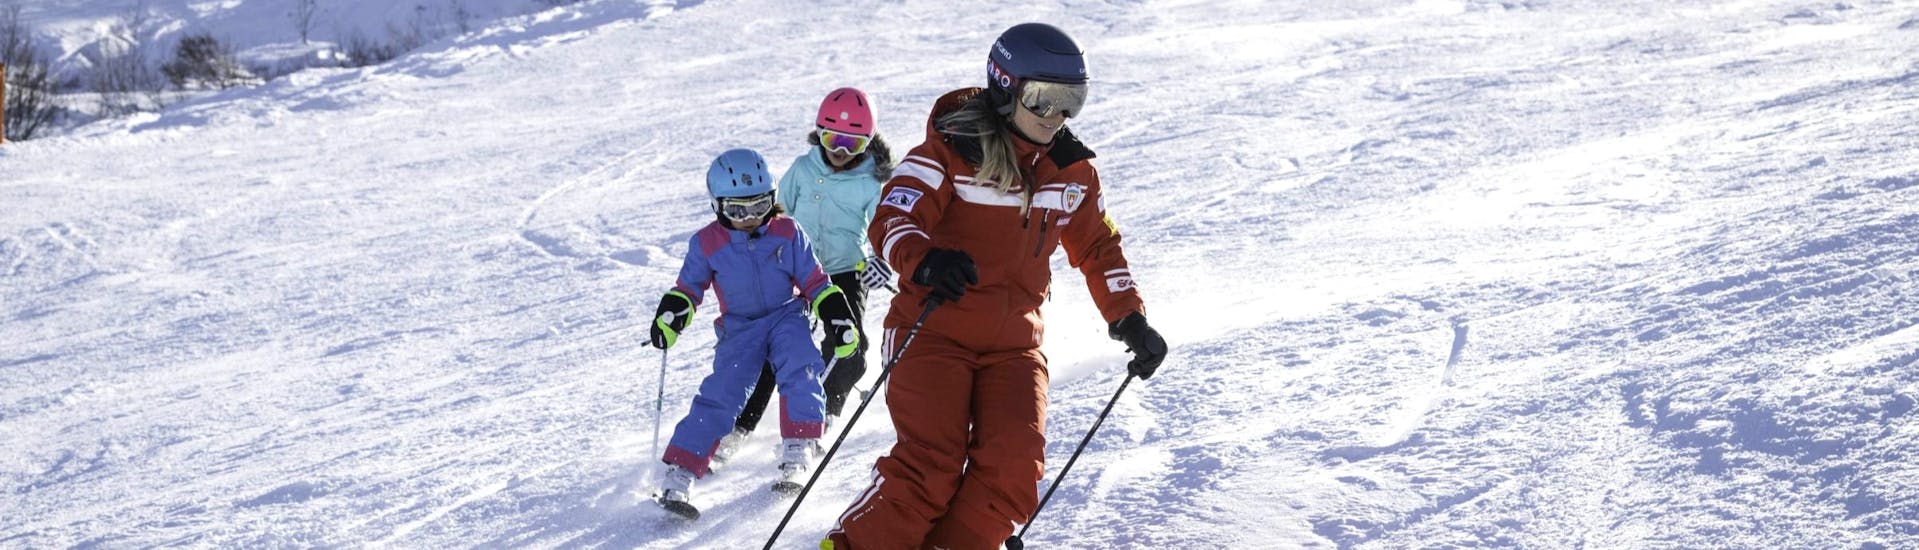 Cours particulier de ski Enfants dès 3 ans.